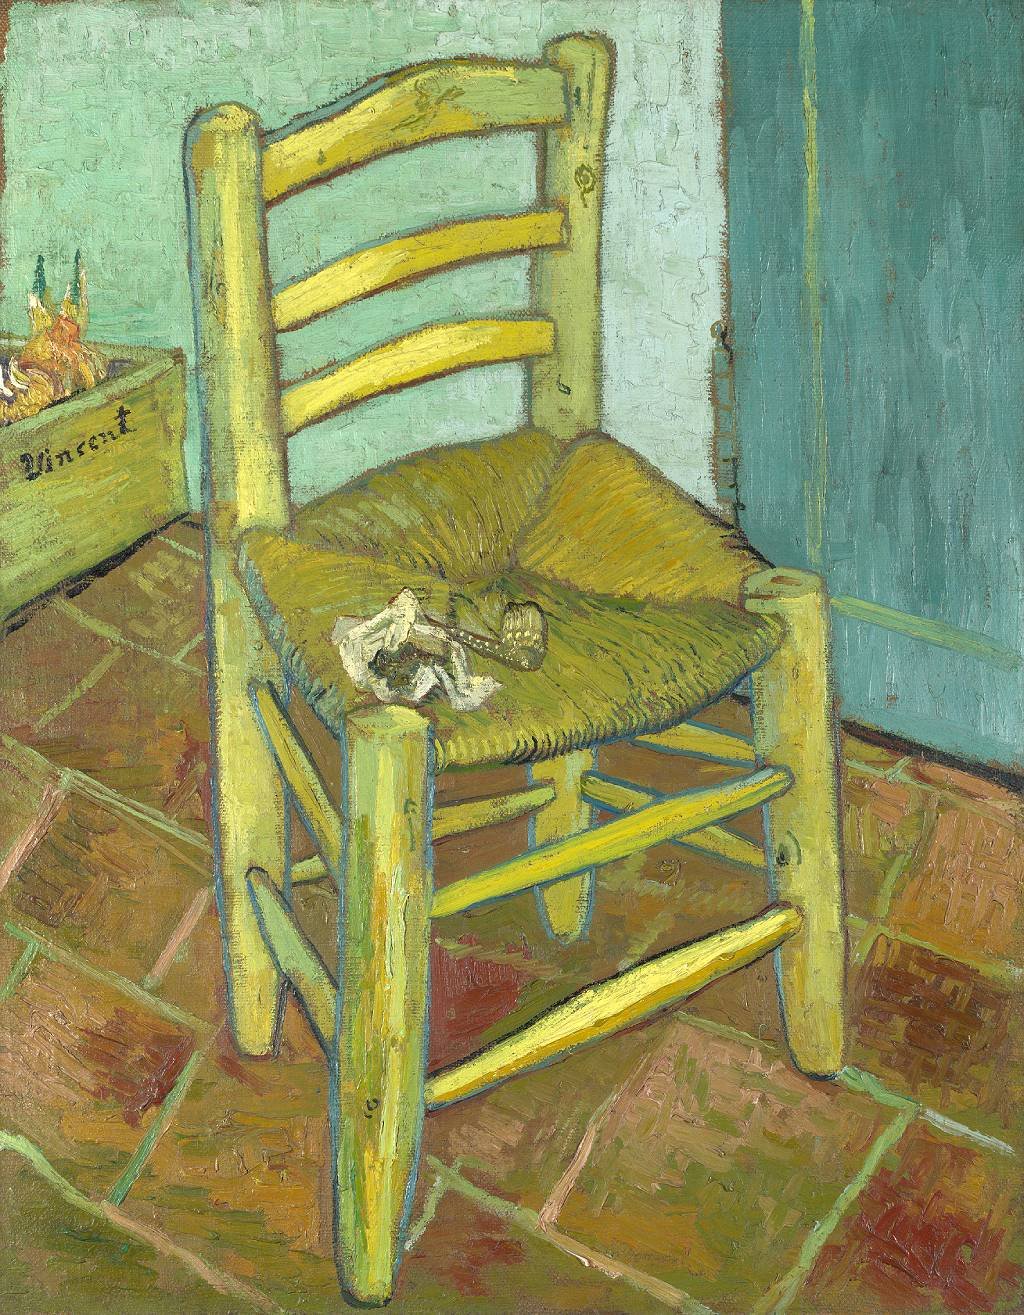 "La silla de Van Gogh" de Vincent van Gogh, 1888. Galería Nacional, Londres, Reino Unido.